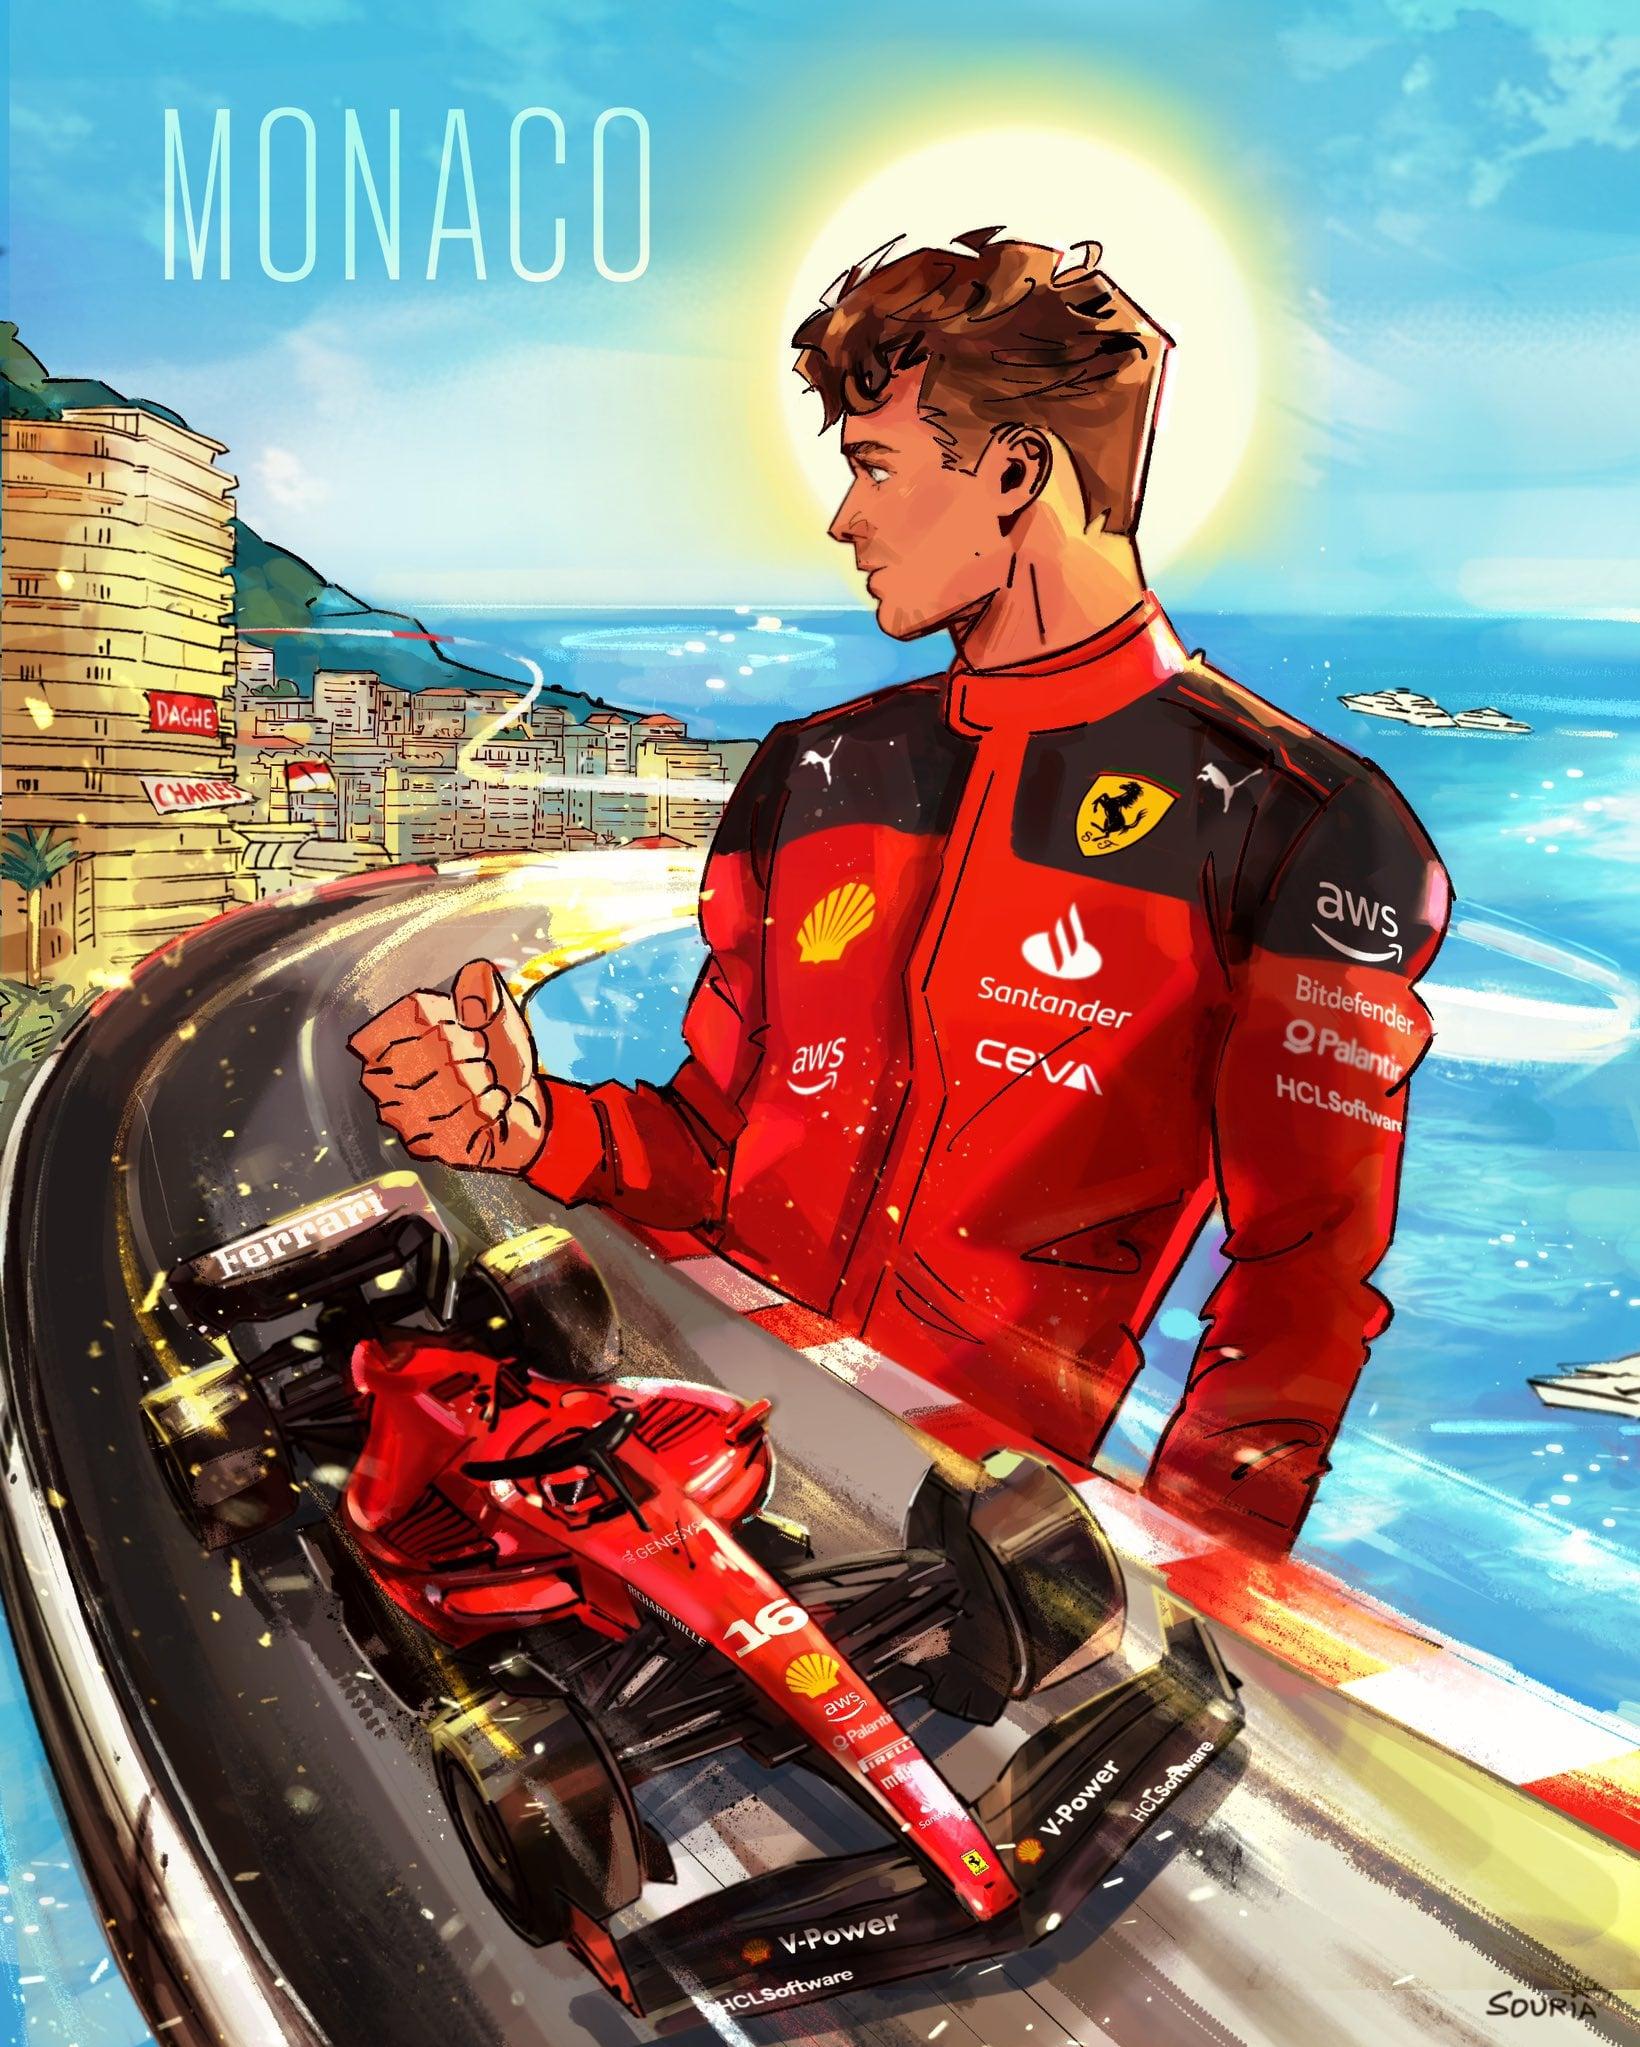 Scuderia Ferrari Monaco Grand Prix Poster By Souria Draws R